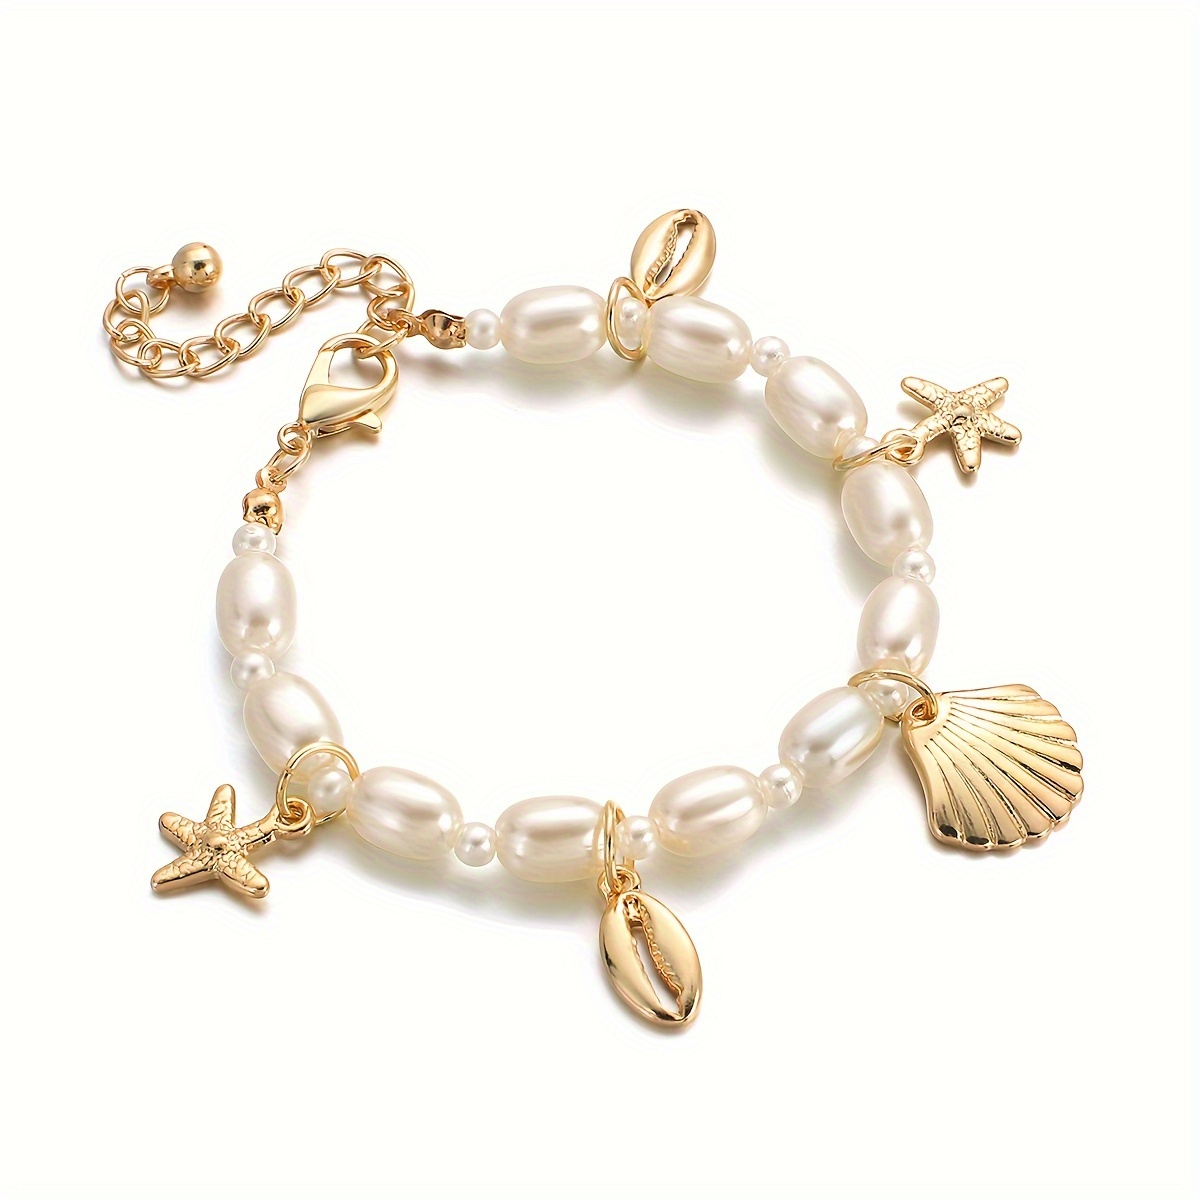 

Bohemian Style Faux Pearl Beaded Bracelet, Seashell Charm Pendant Link Chain Bracelets Summer Beach Hand Jewelry For Women